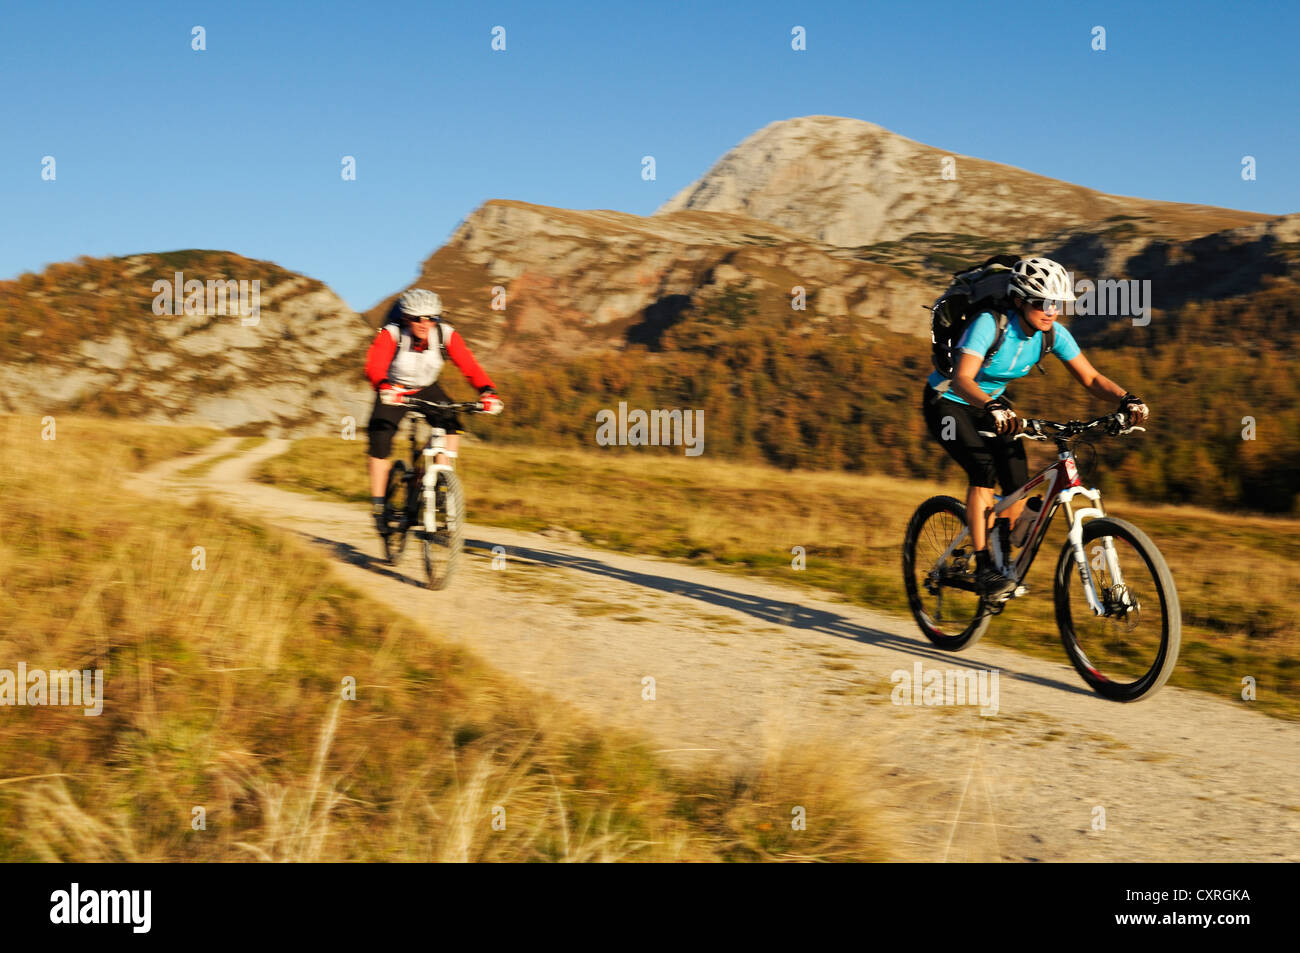 Les cyclistes de montagne en route vers Gotzenalm alp, Berchtesgadener Land, district de Haute-bavière, Bavaria, Germany, Europe Banque D'Images